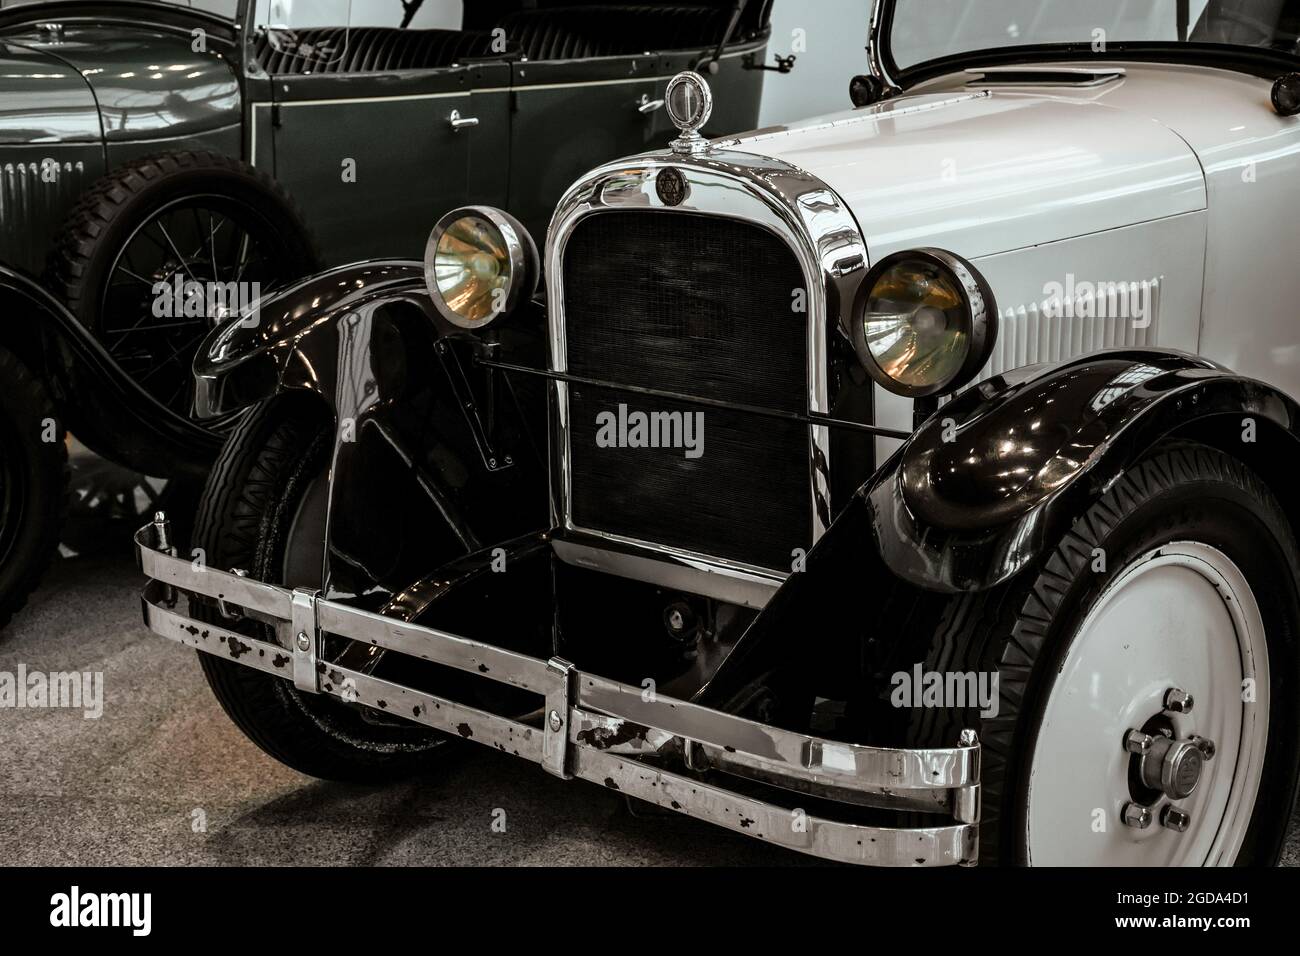 4. Juni 2019, Moskau, Russland: Grill und Scheinwerfer des amerikanischen Autos Dodge 124 Open Touring 1928. Klassische Retro-Autos der 1920er Jahre. Stockfoto